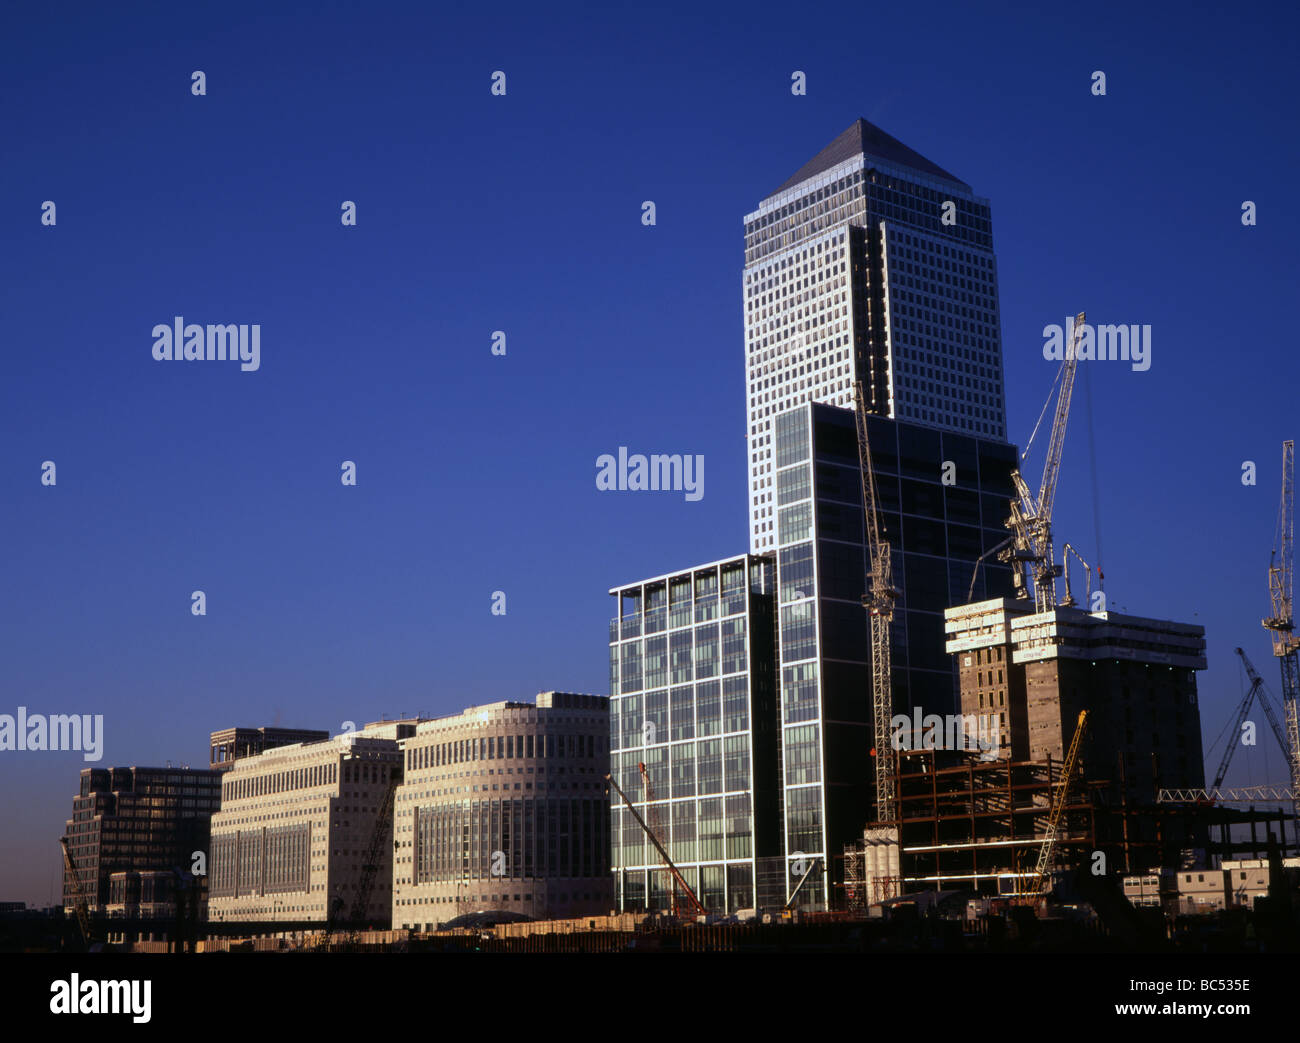 Bau am Canary Wharf Docklands in London in den späten 1990er Jahren Stockfoto